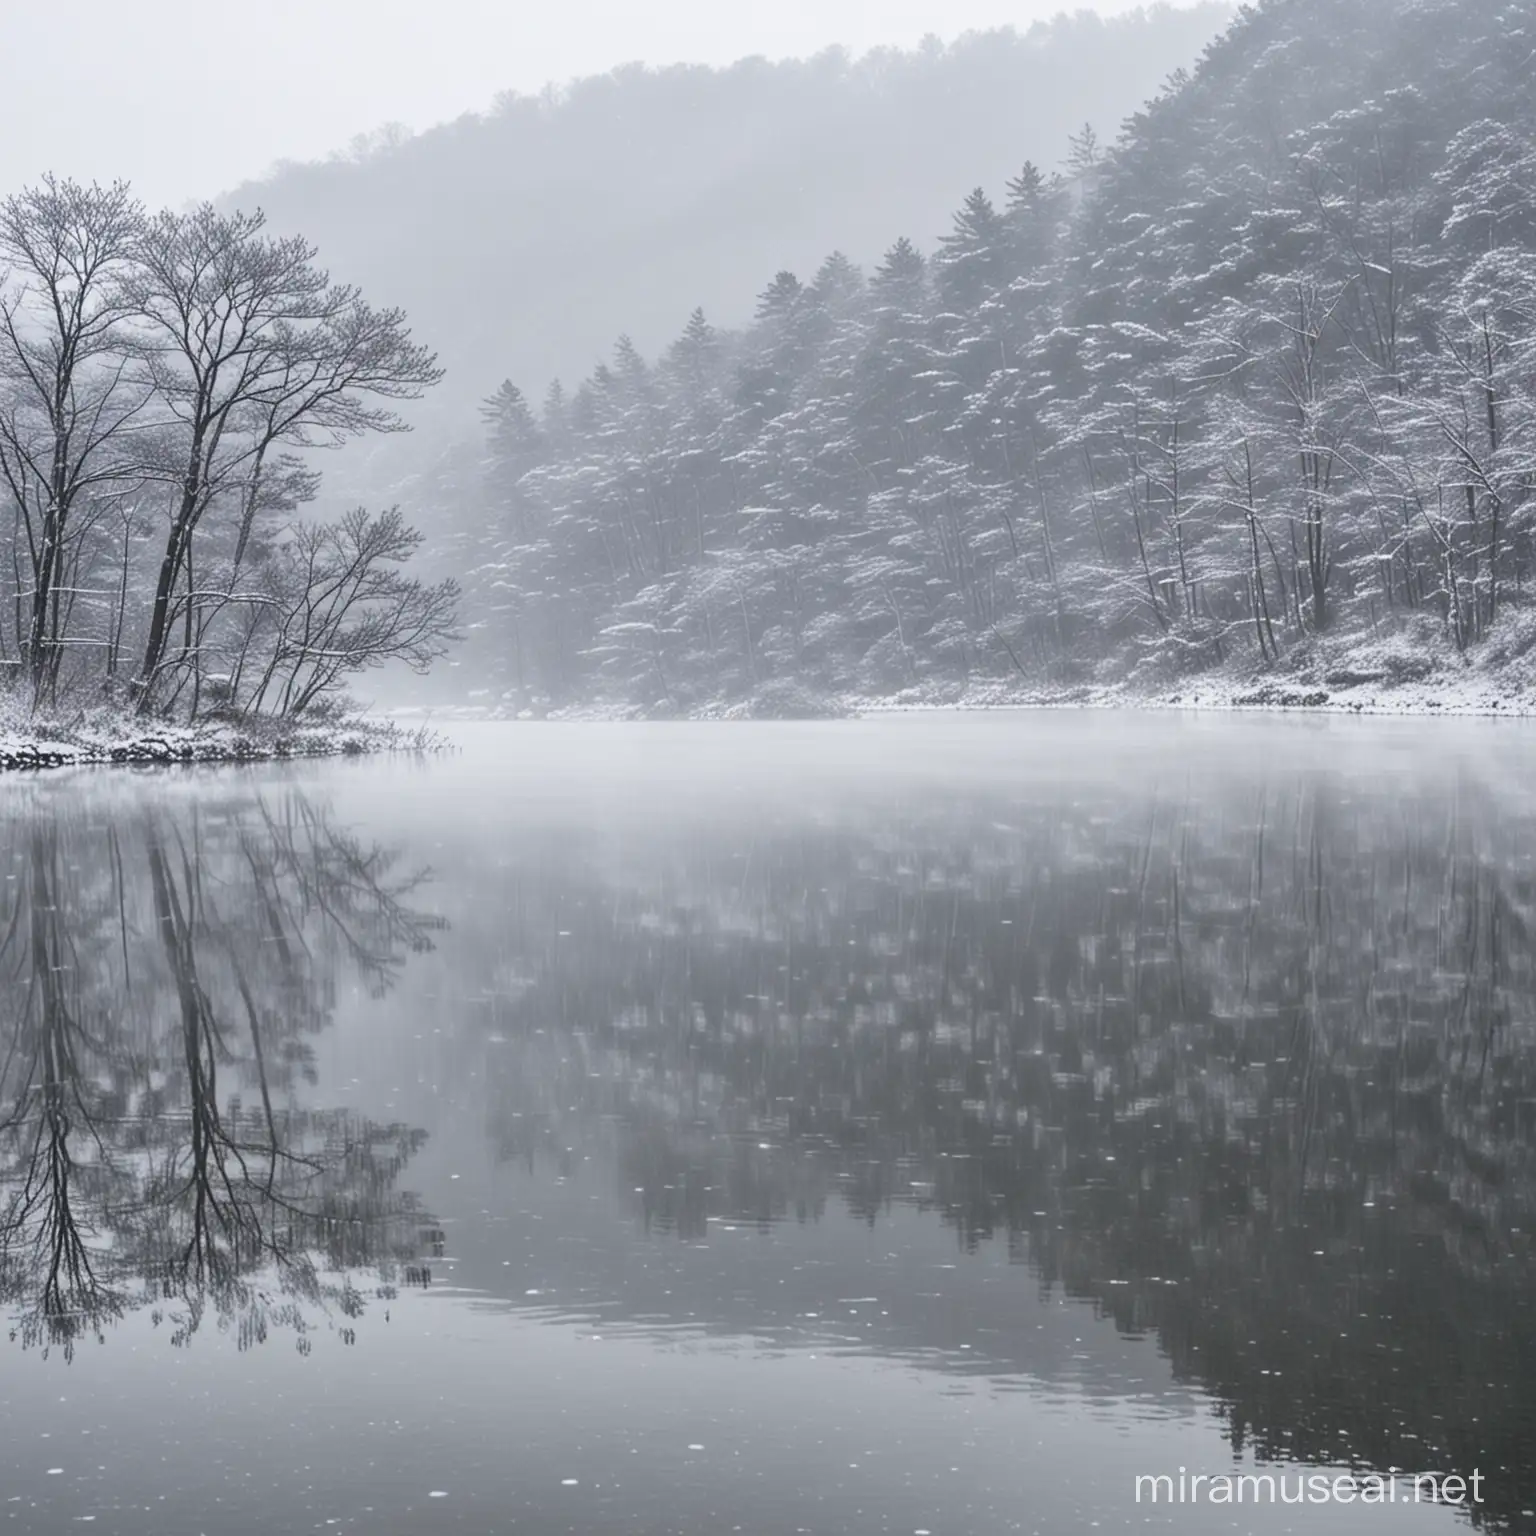 Tranquil Snowfall at Hibara Lake Fukushima Japan